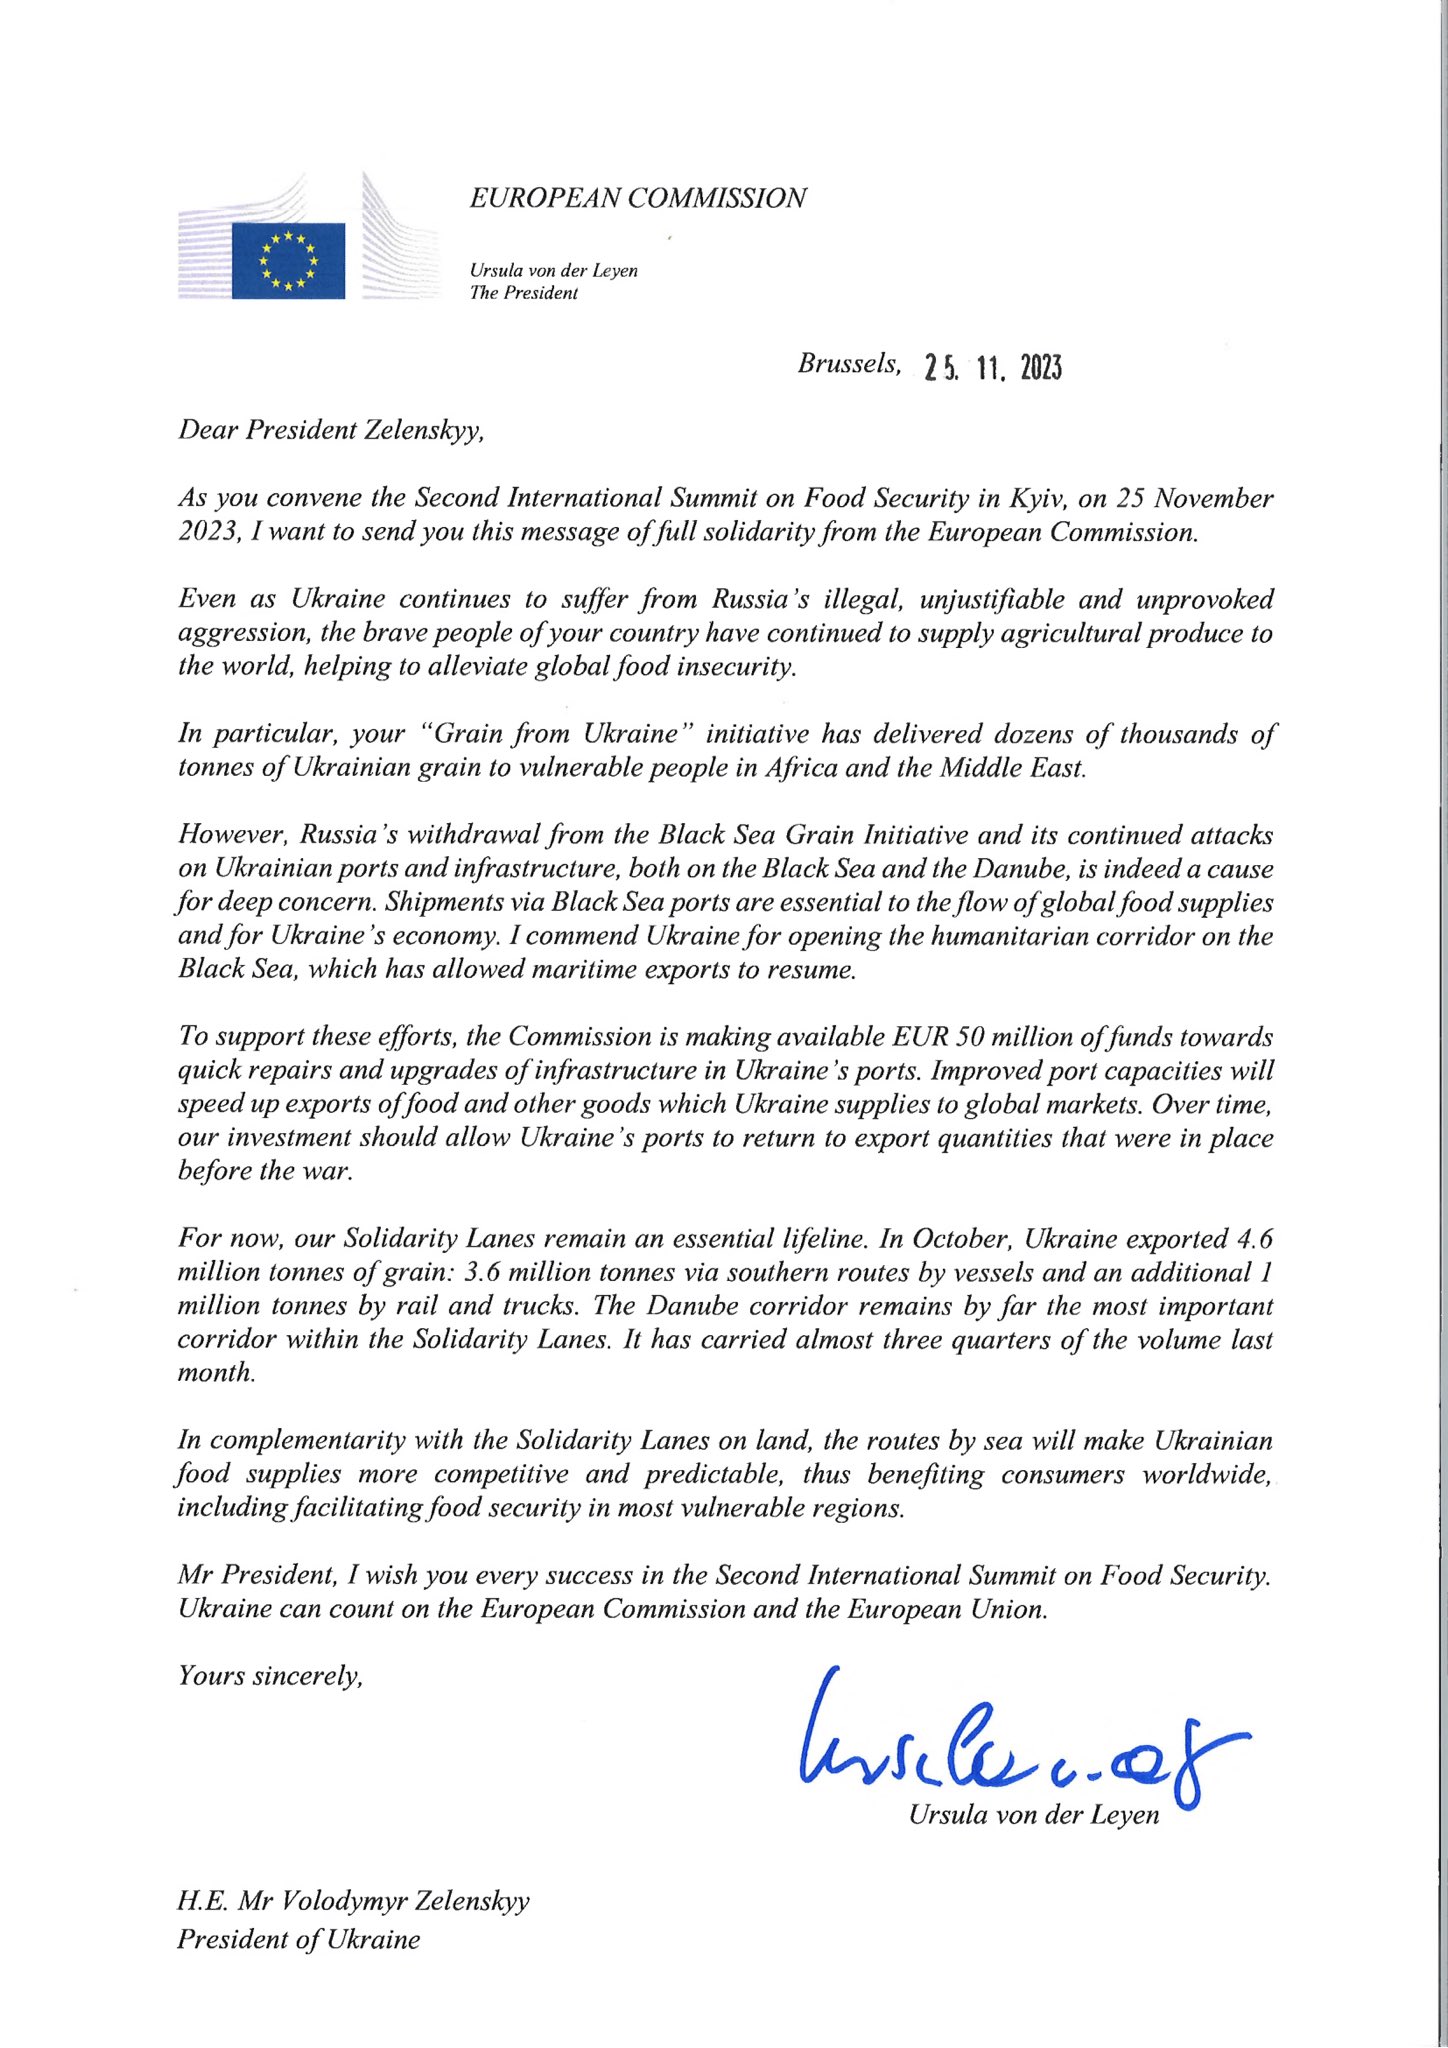 Снимок письма главы Еврокомиссии Владимиру Зеленскому